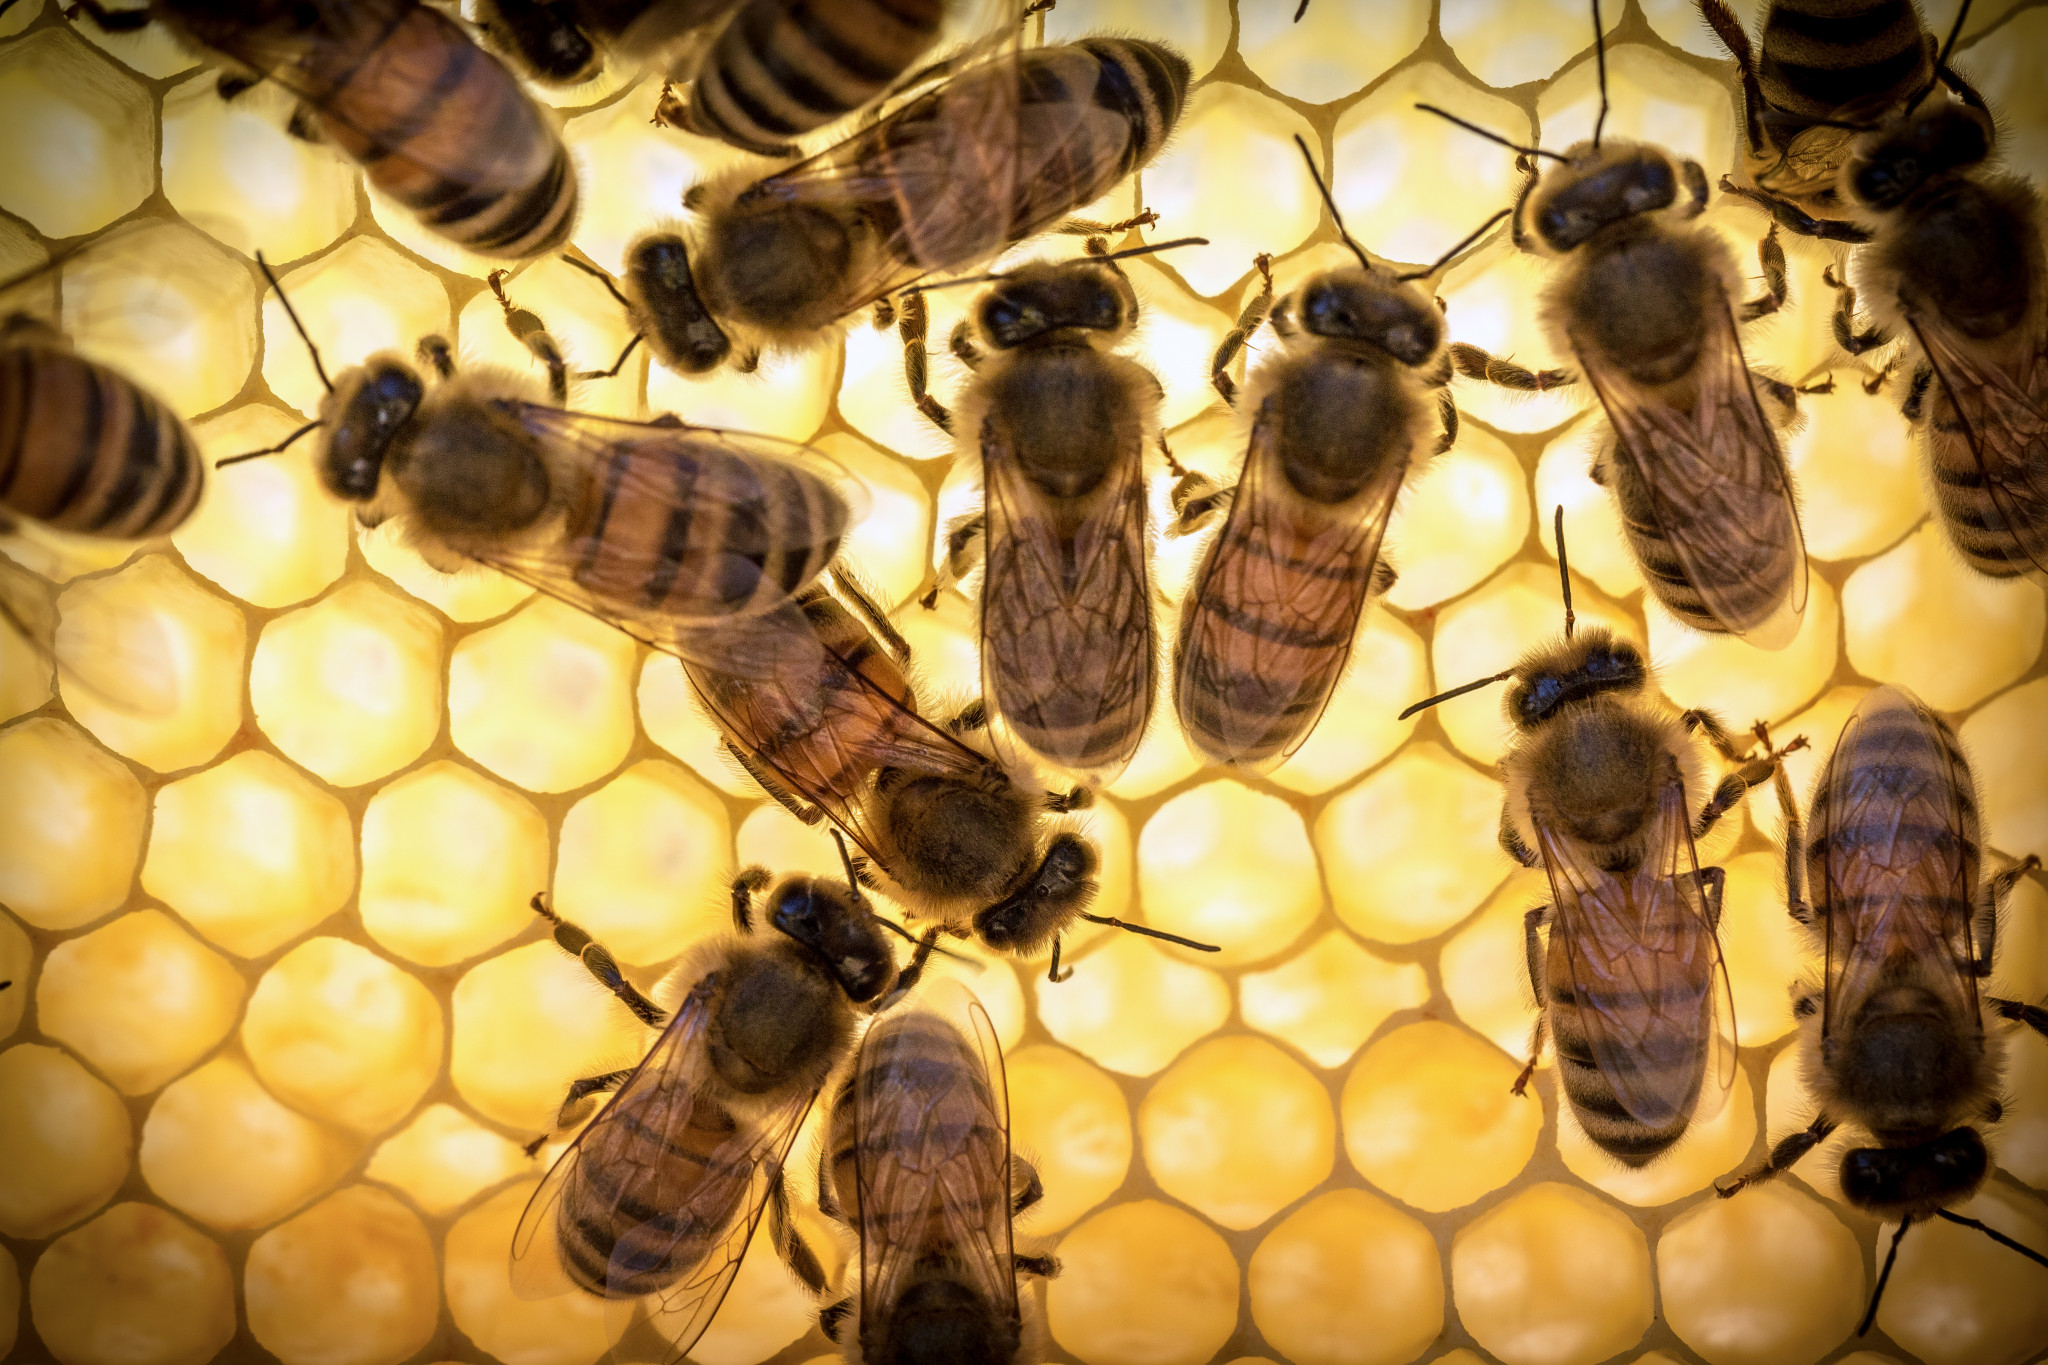 Arı arı sütünün geceleri kullanılması önerilmemektedir, çünkü etkisi altında sinirsel aktivite ve olası uykusuzluk artar